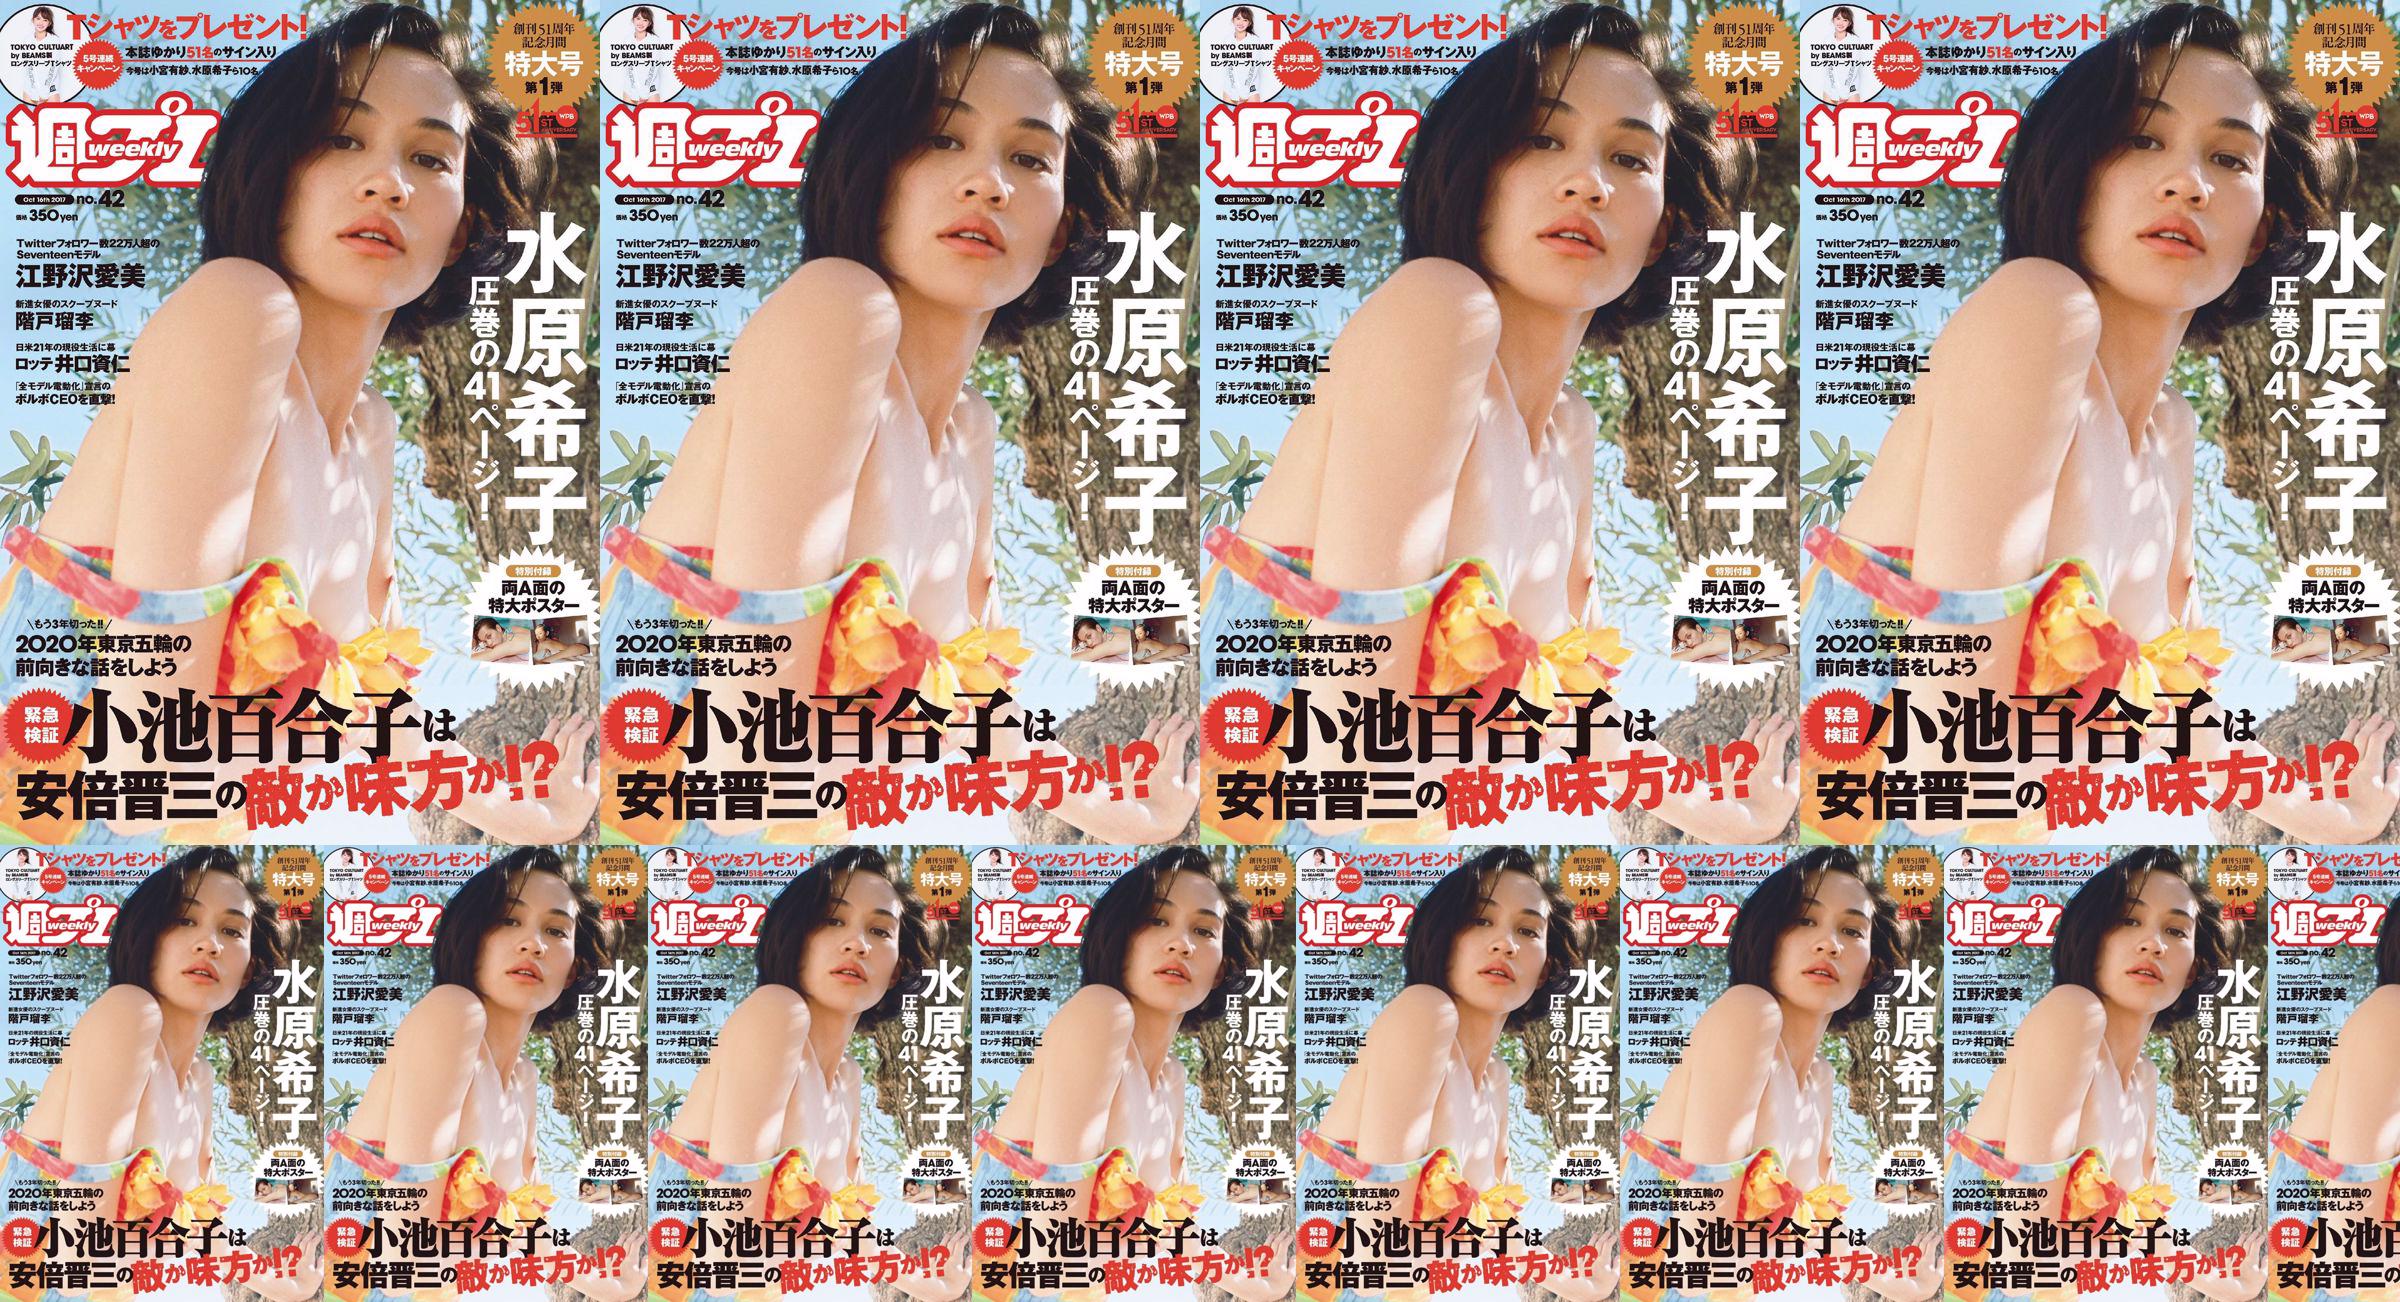 Kiko Mizuhara Manami Enosawa Serina Fukui Miu Nakamura Ruri Shinato [Weekly Playboy] Nr 42 Magazyn fotograficzny 2017 No.a8bca0 Strona 1